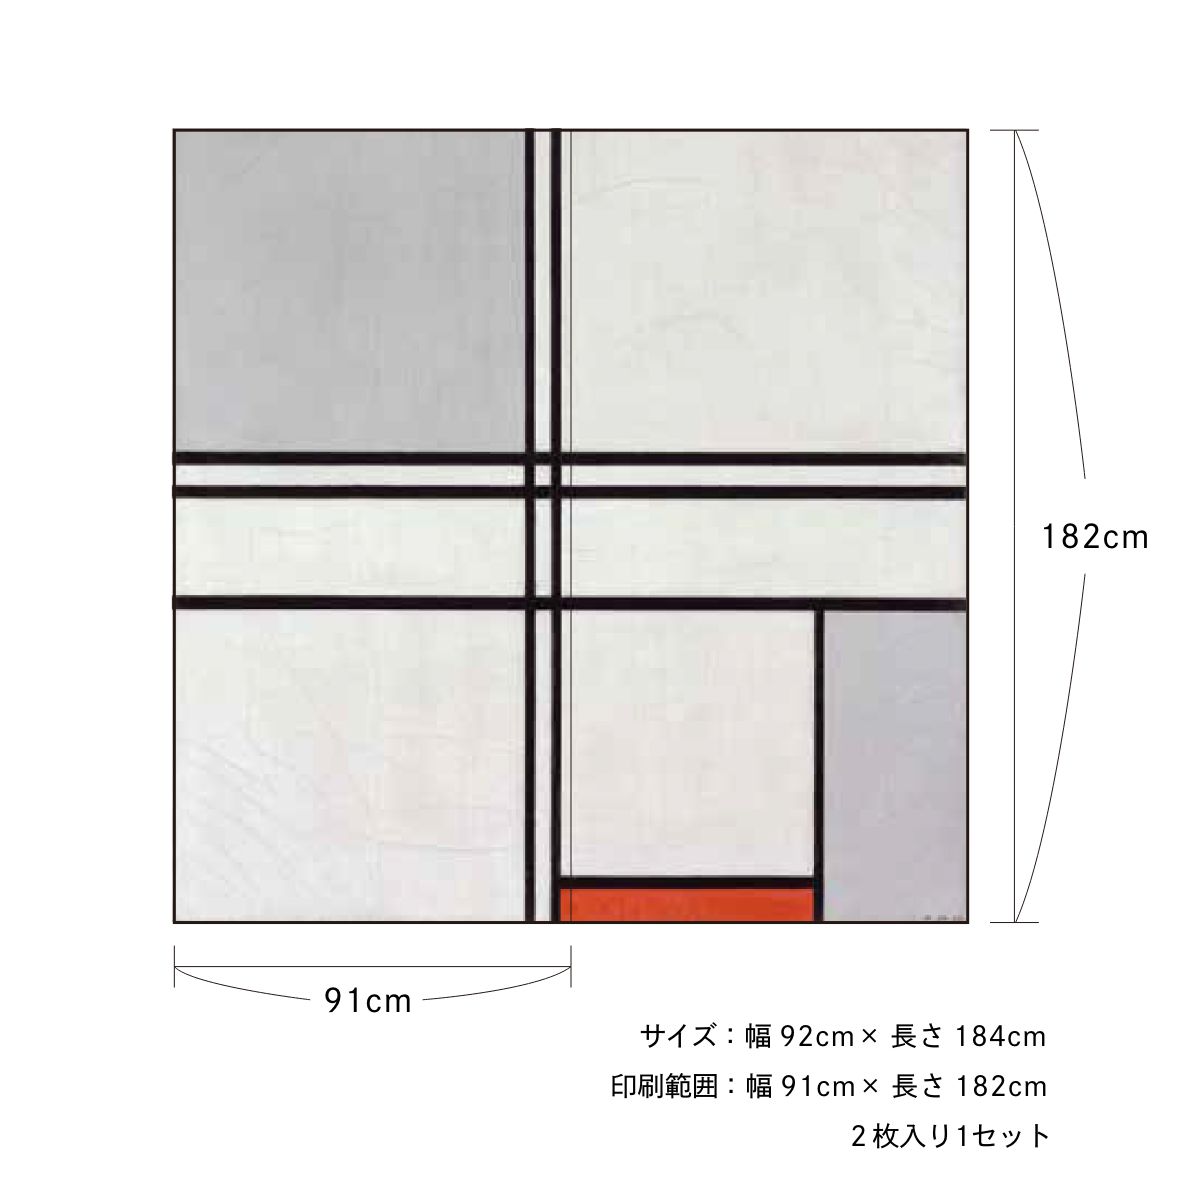 世界の名画 ふすま紙 モンドリアン 赤と灰色のコンポジション 2枚1組 水で貼るタイプ 幅91cm×長さ182cm 襖紙 アサヒペン WWA-031F